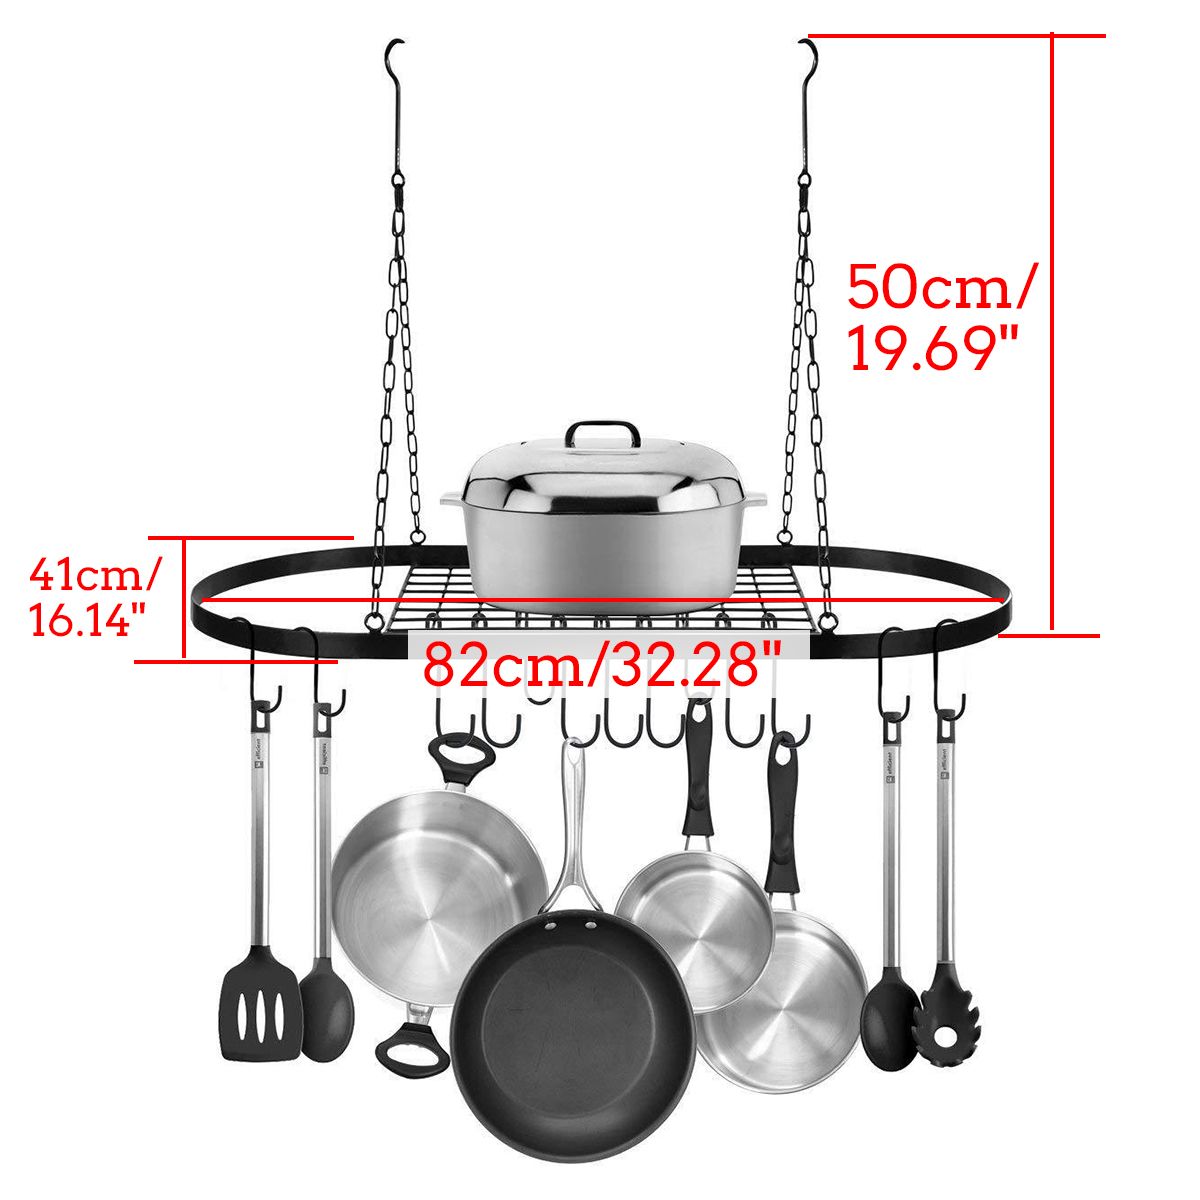 Hanging-Iron-Rack-Storage-Kitchen-Organizer-Pot-Pan-Ceiling-Holder-Shelf-Hooks-1584339